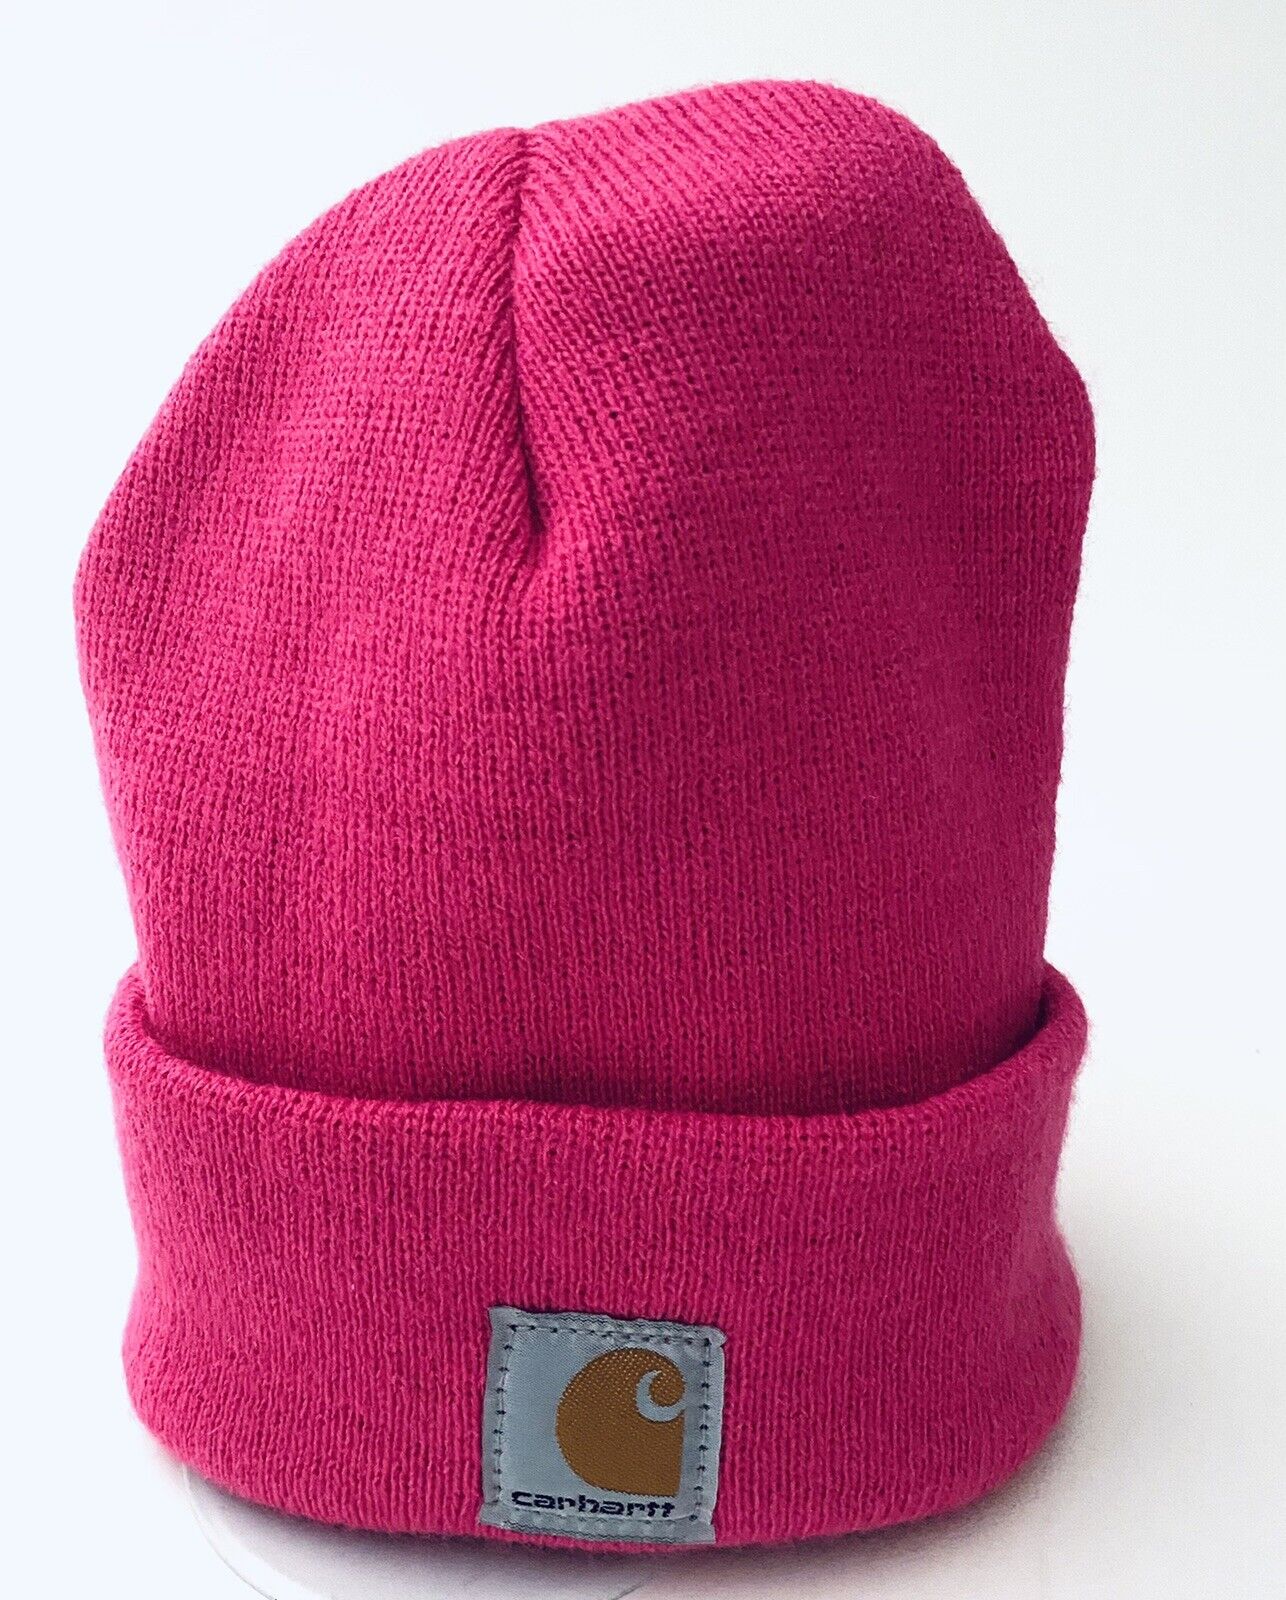 Carhatt Pink Child/youth Beanie Winter Knit Hat